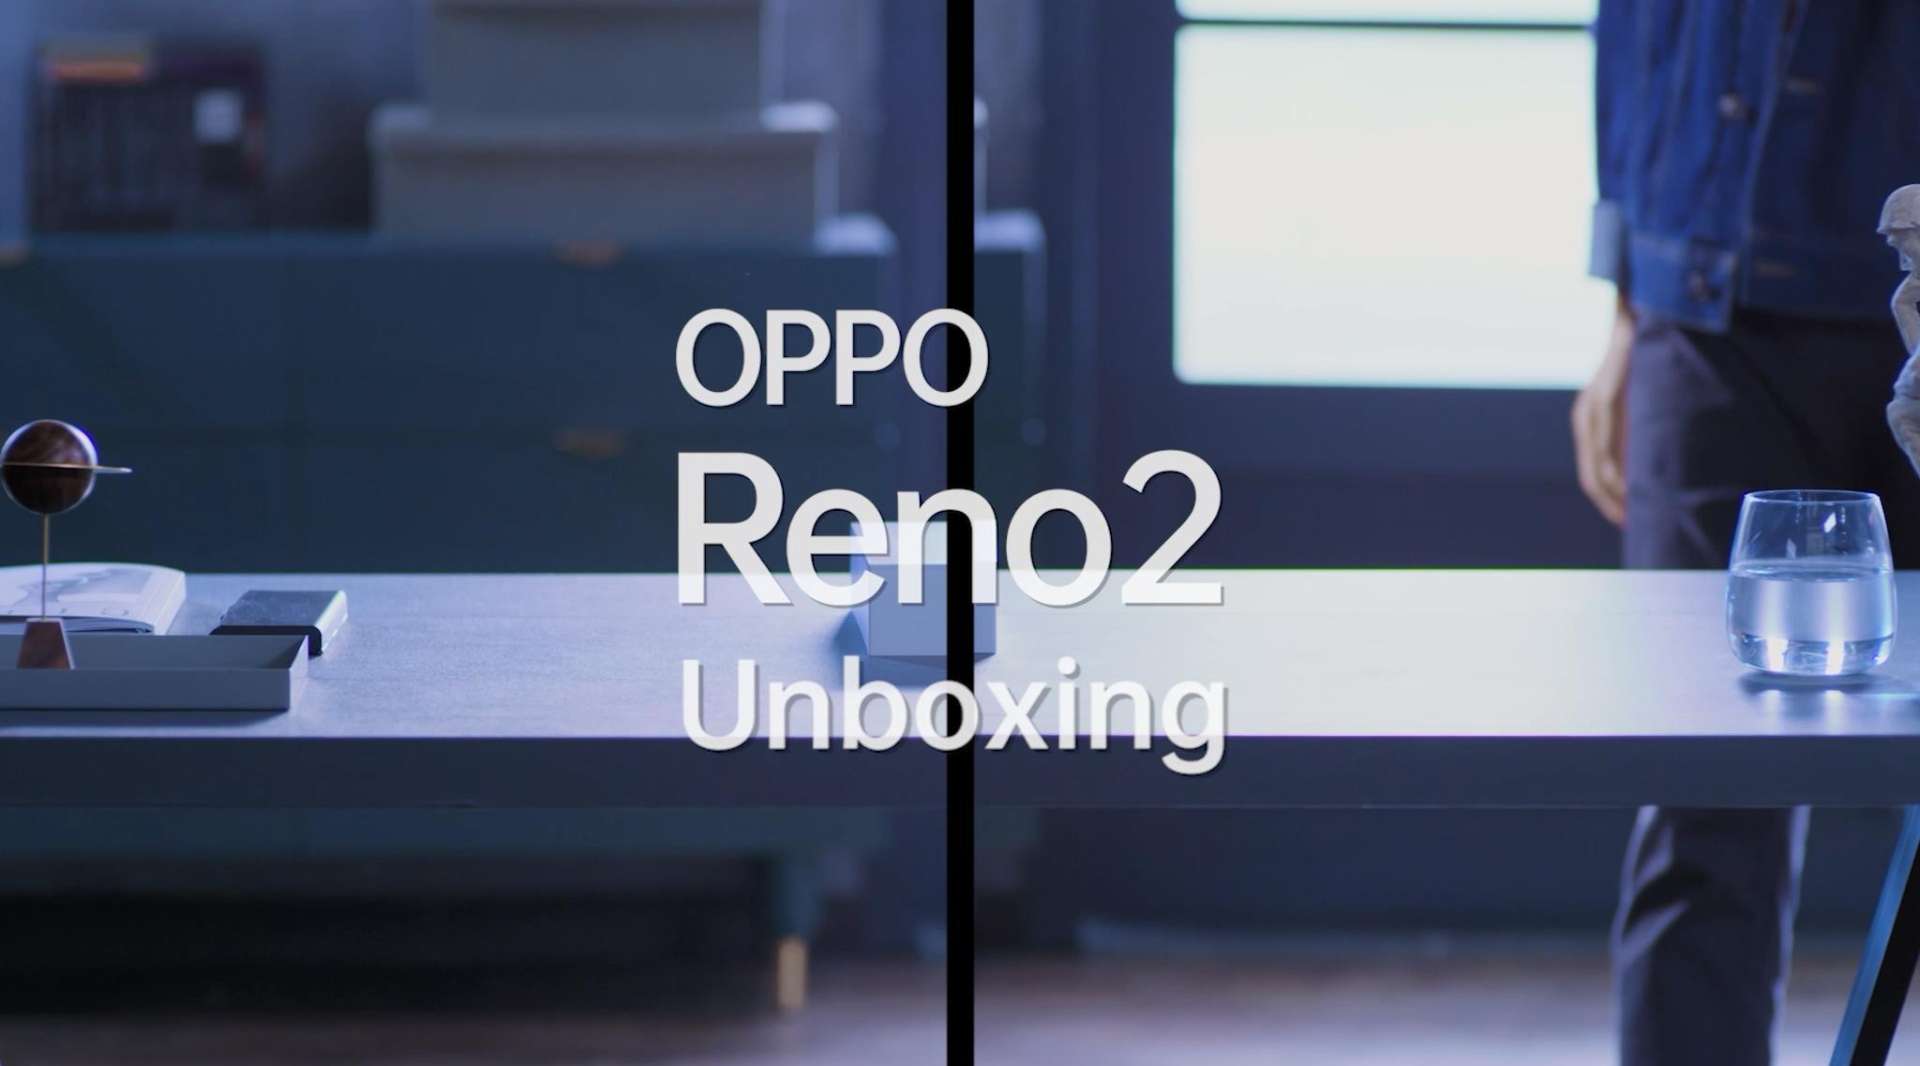 OPPO Reno2 unboxing 开箱视频